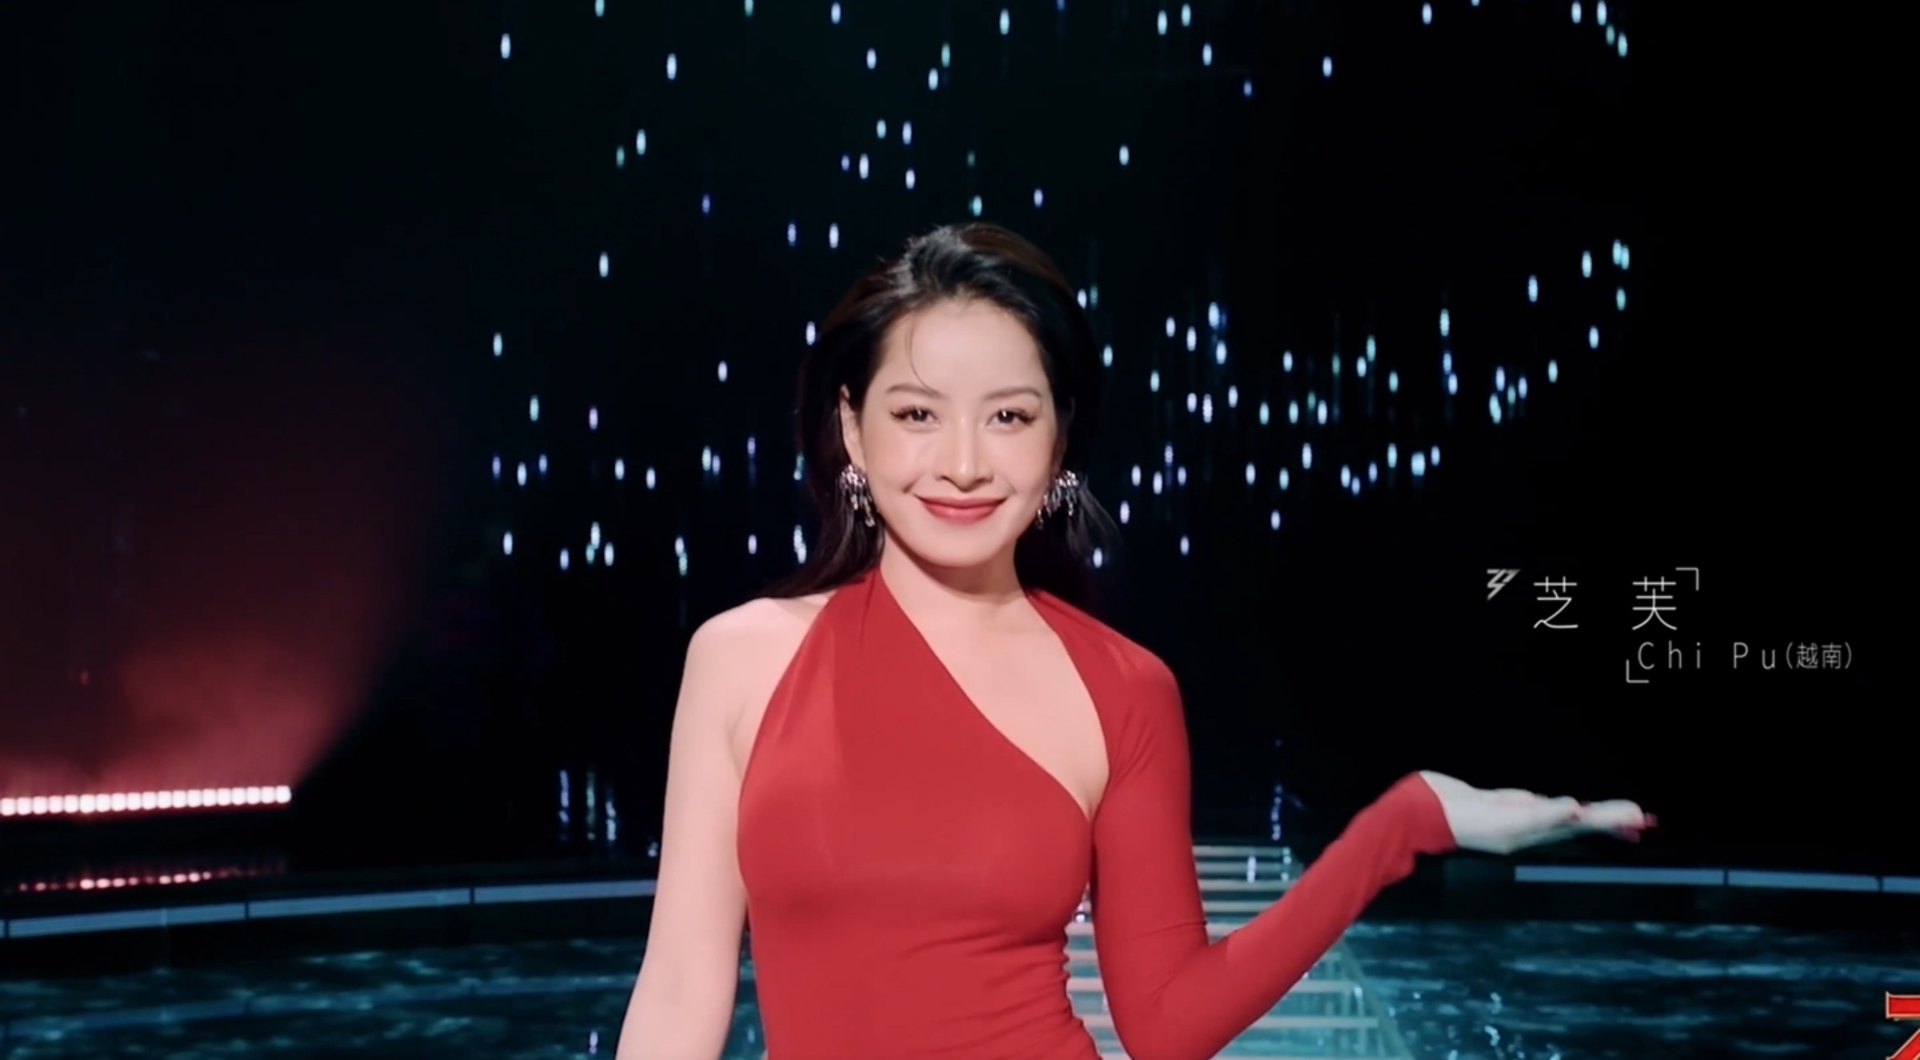 Hình ảnh Chi Pu xuất hiện trong trailer 'Tỷ tỷ đạp gió rẽ sóng' nhanh chóng trở thành chủ đề được sự quan tâm, bình luận. Đa số liên quan đến giọng hát và visual của nữ nghệ sĩ tại chương trình.